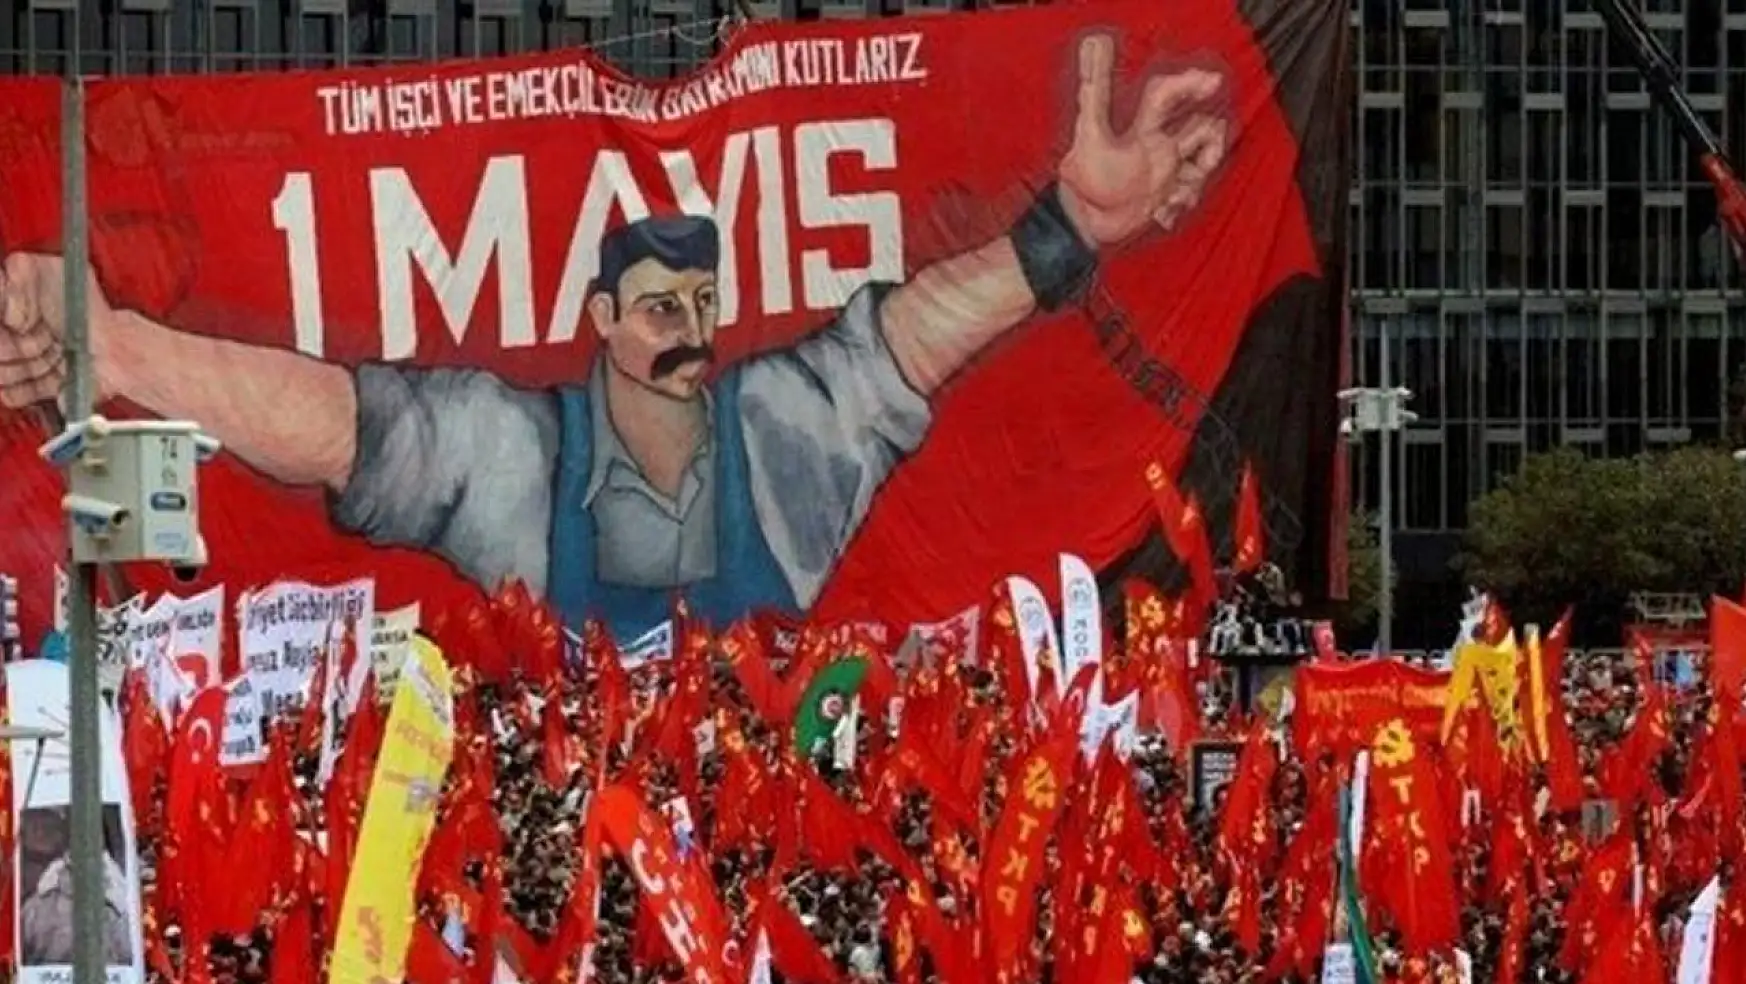 1 Mayıs'ı Erdoğan mı Resmi Bayram İlan Etti?